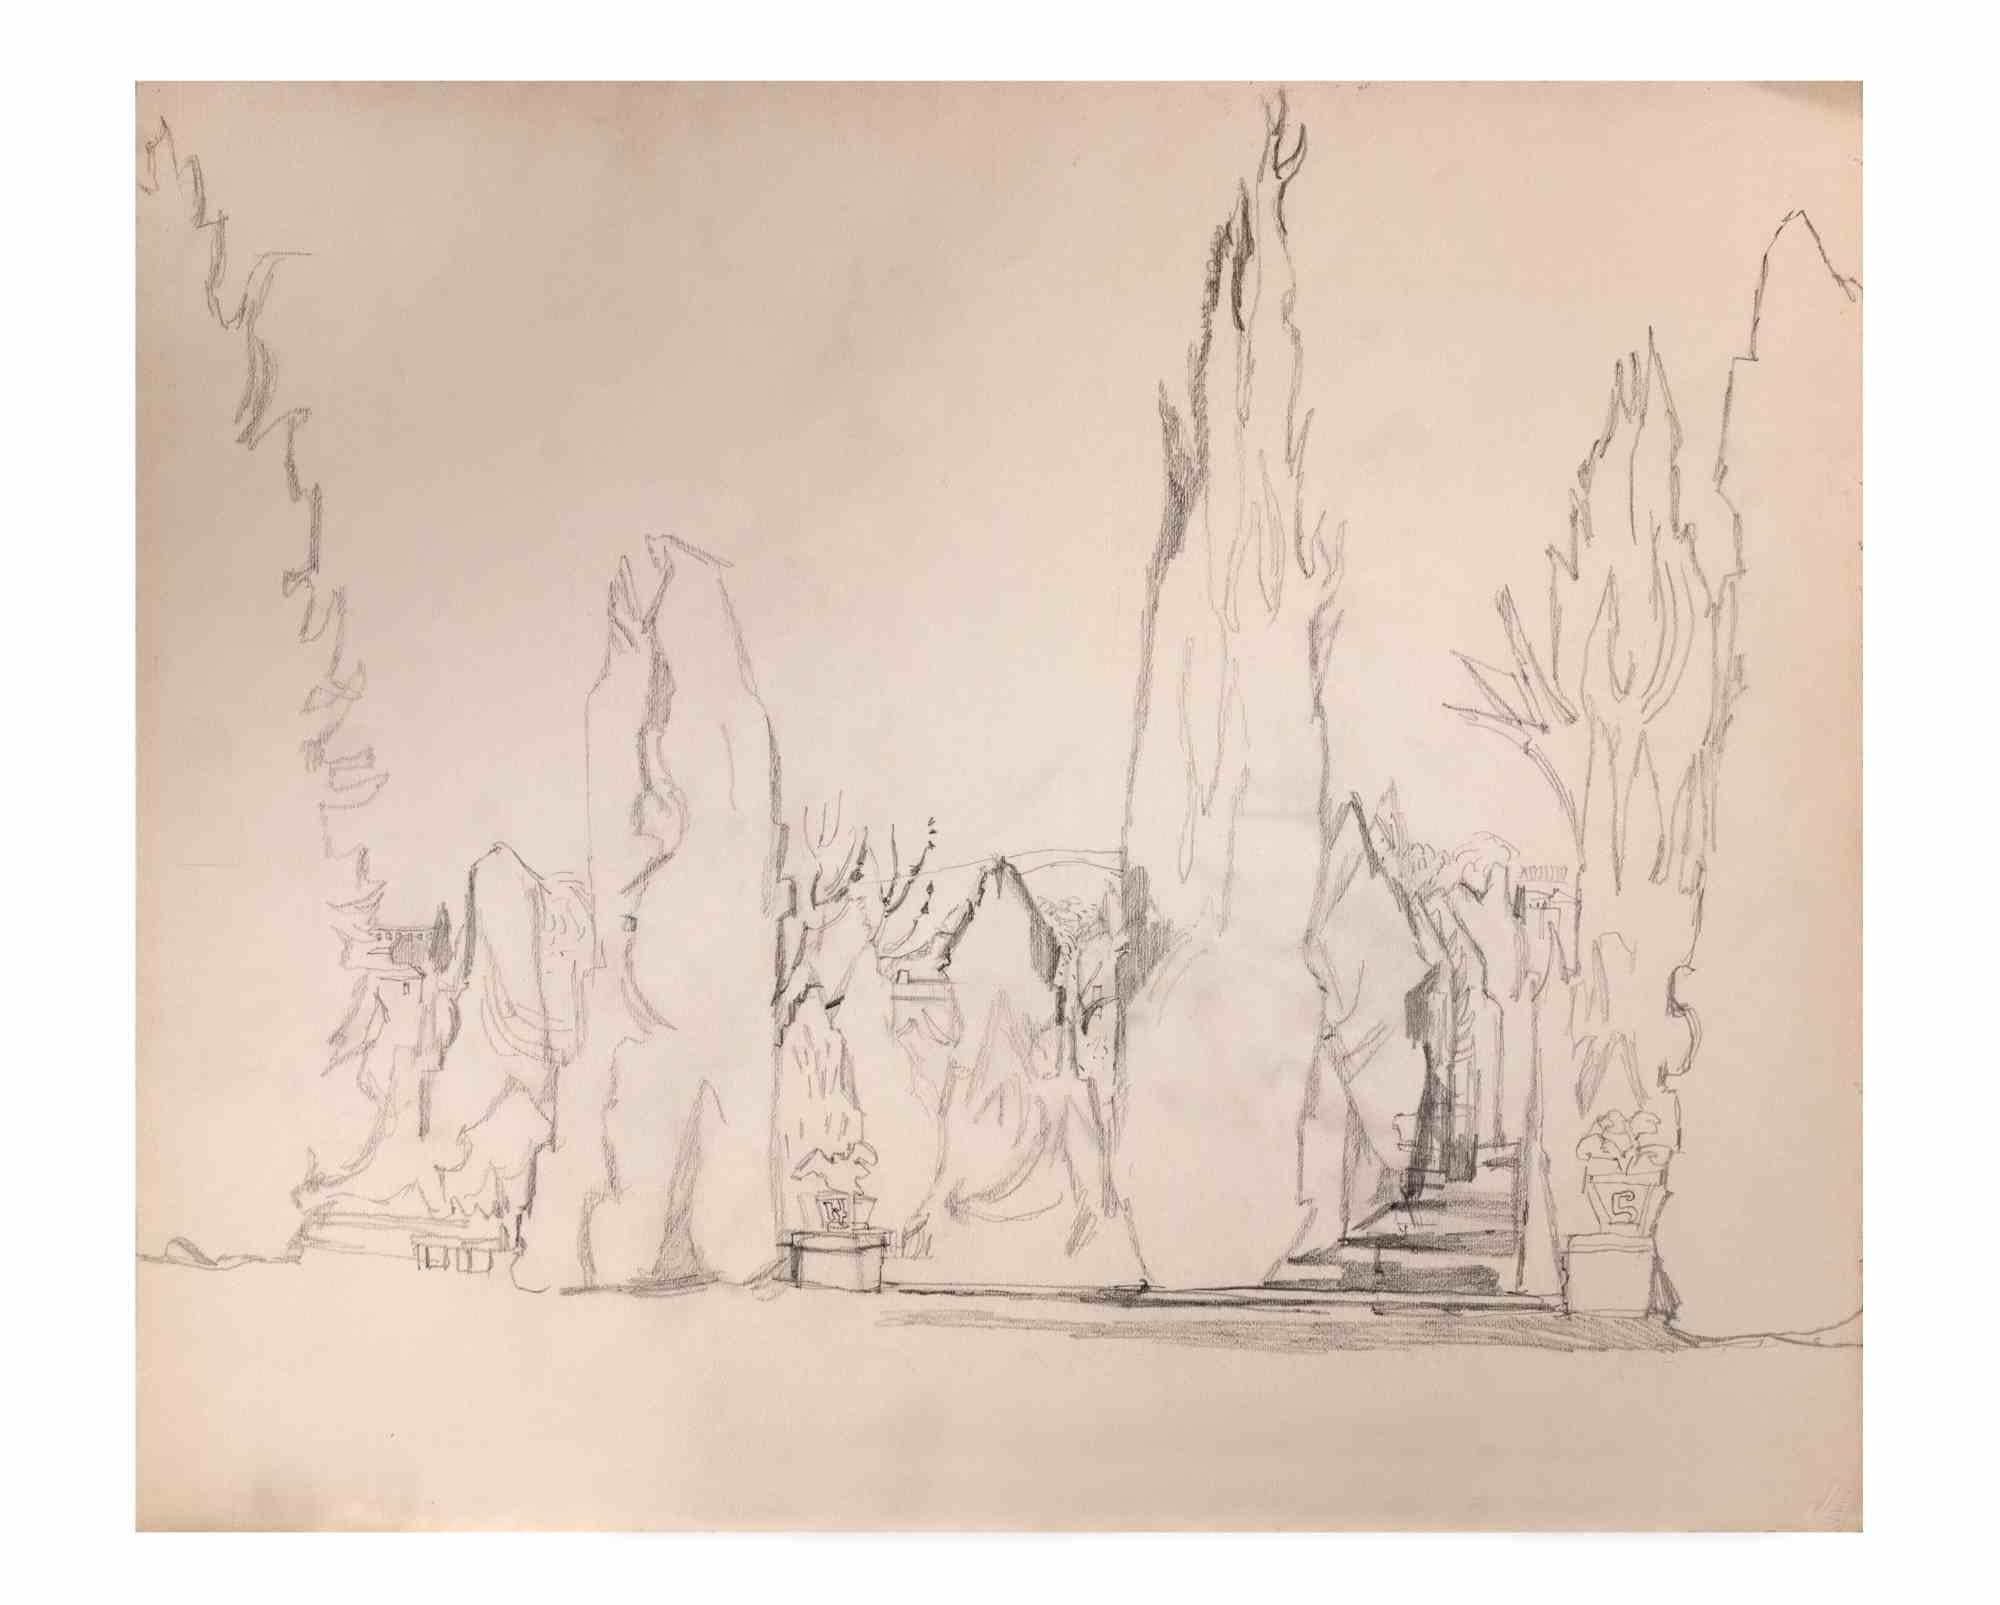 Paysage est un dessin au crayon réalisé par Reynold Arnould  (Le Havre 1919 - Parigi 1980).

Bon état.

Pas de signature.

Reynold Arnould est né au Havre, en France, en 1919. Il a étudié à l'École des Beaux-Arts du Havre, et a remporté le Grand